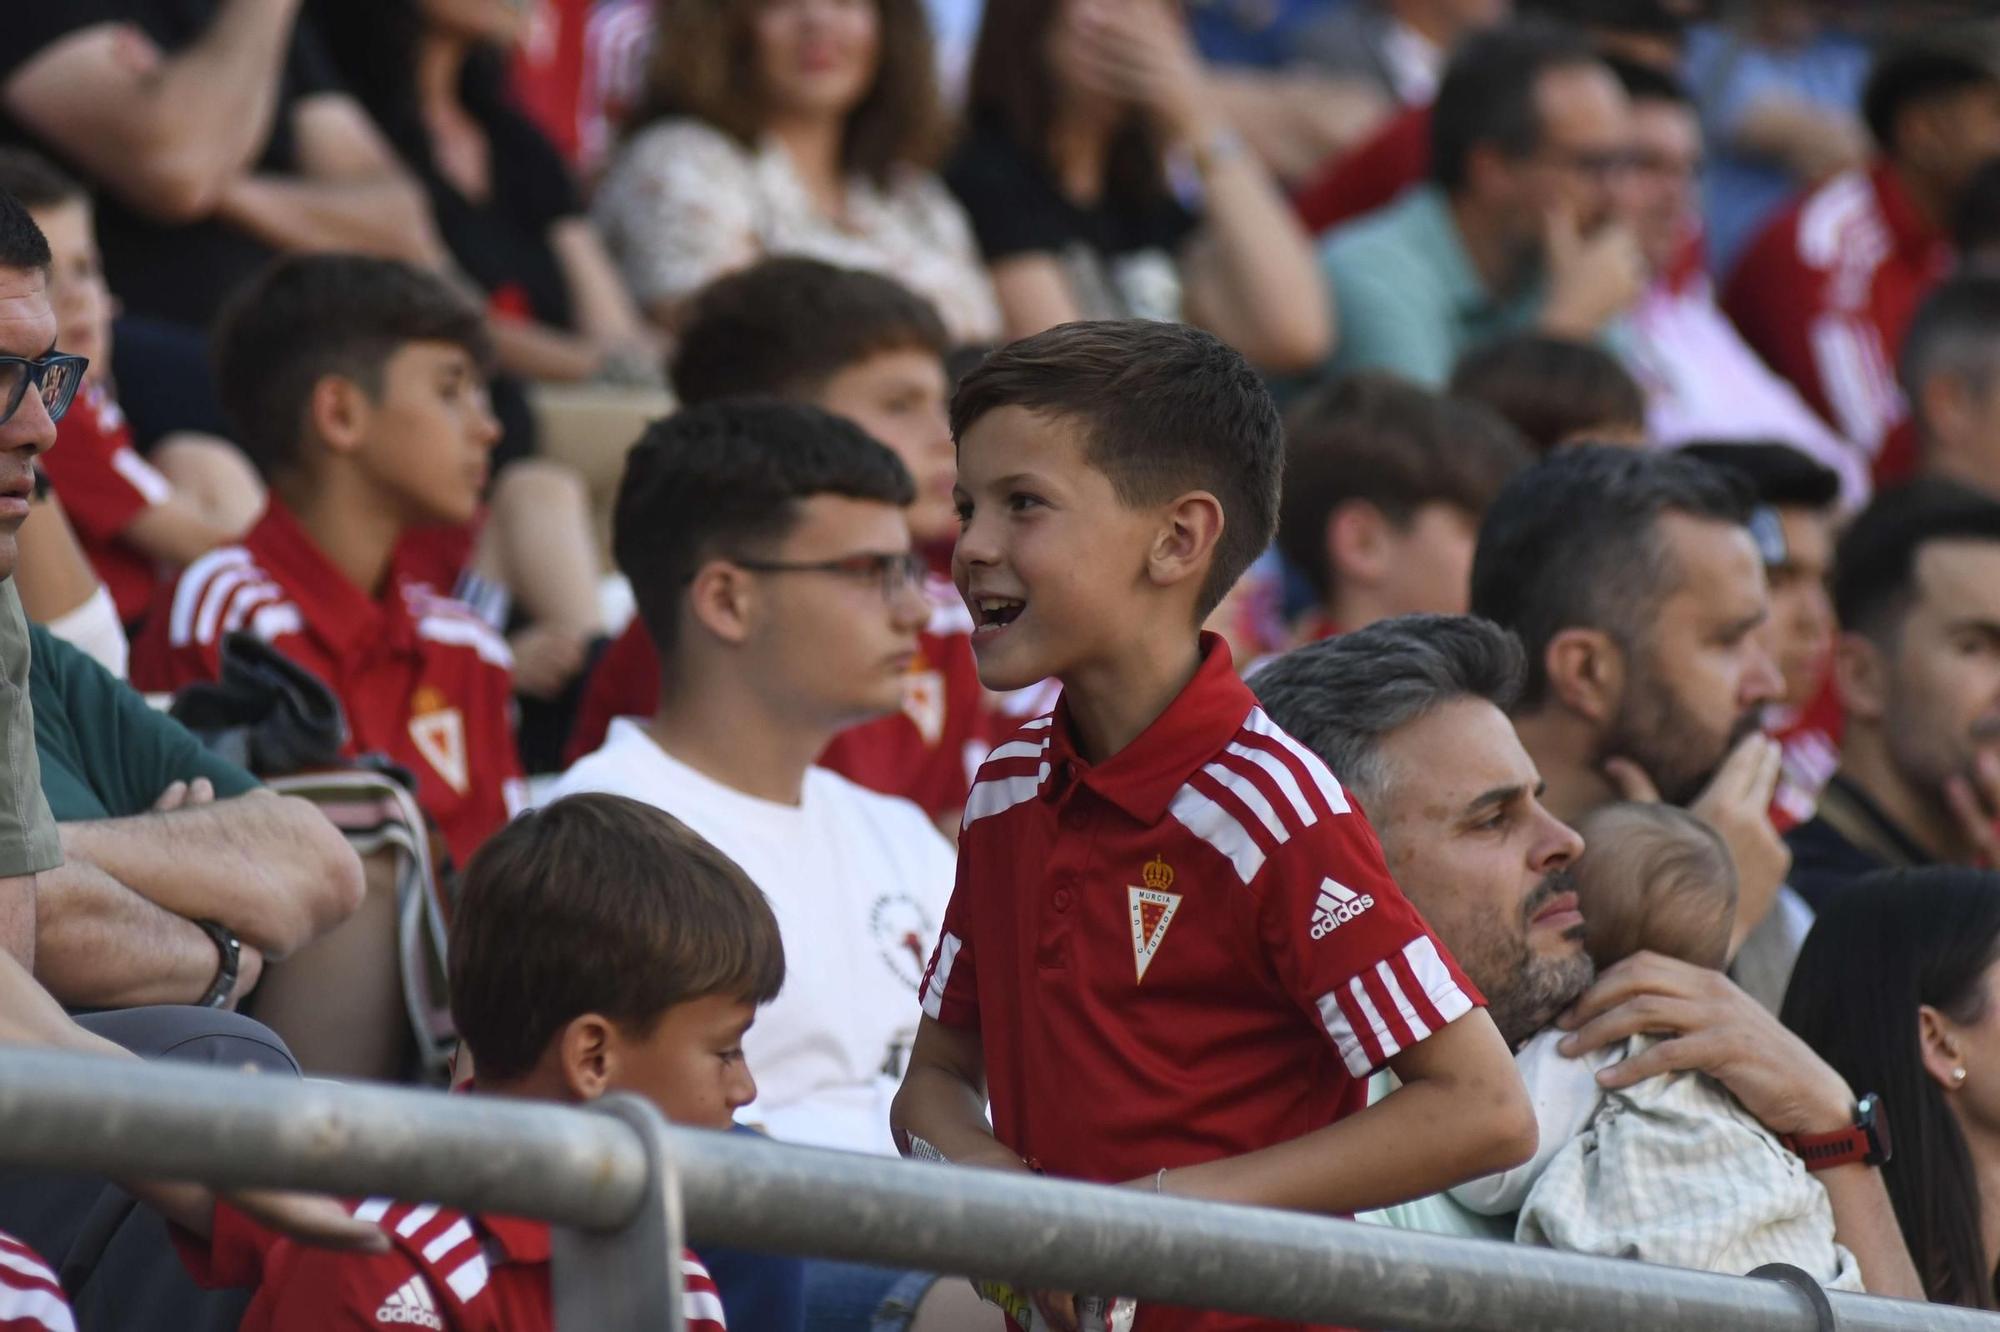 La presentación de la Ciudad Deportiva del Real Murcia, en imágenes